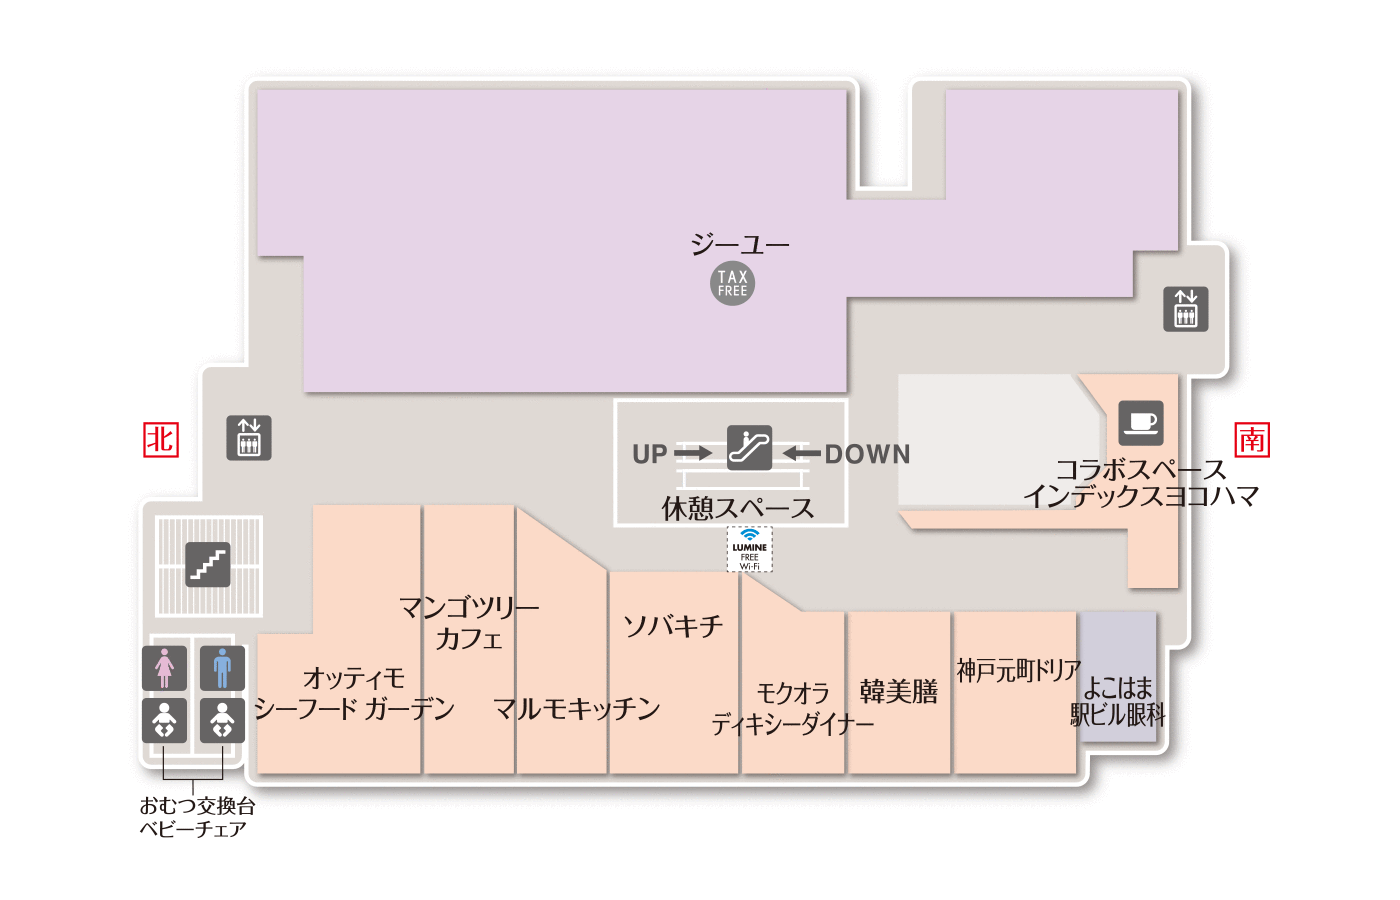 横浜駅近くでコンタクトレンズが買えるおすすめのお店10選 土日も買えて便利 Pathee パシー